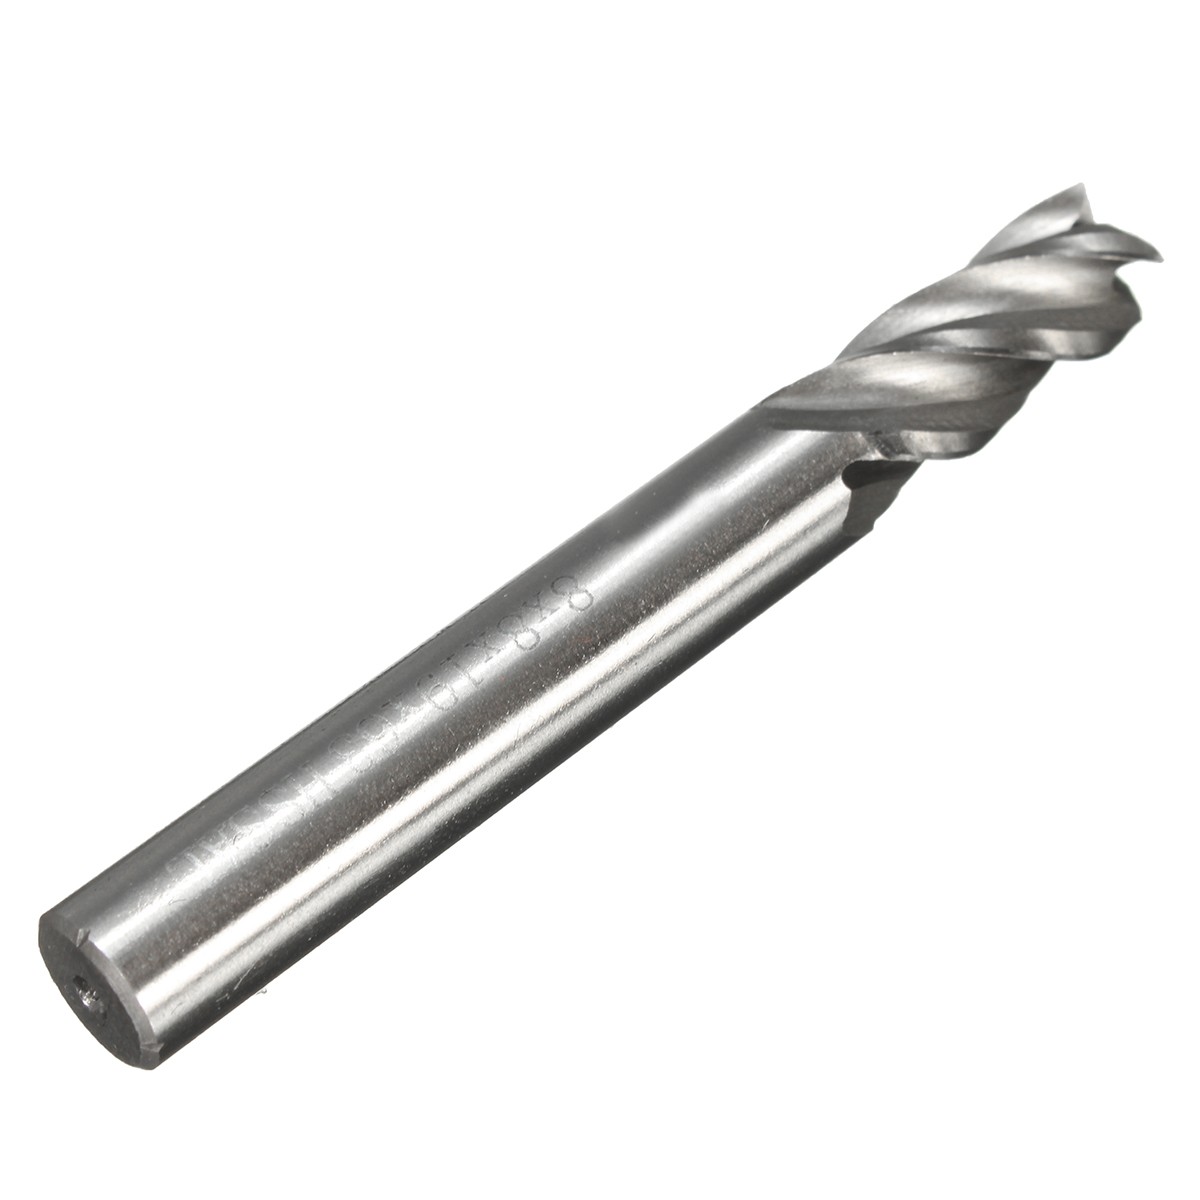 2-12mm-HSS-4-Flute-End-Mill-Cutter-Straight-Shank-Milling-Cutter-Drill-Bit-CNC-Tool-1116645-5